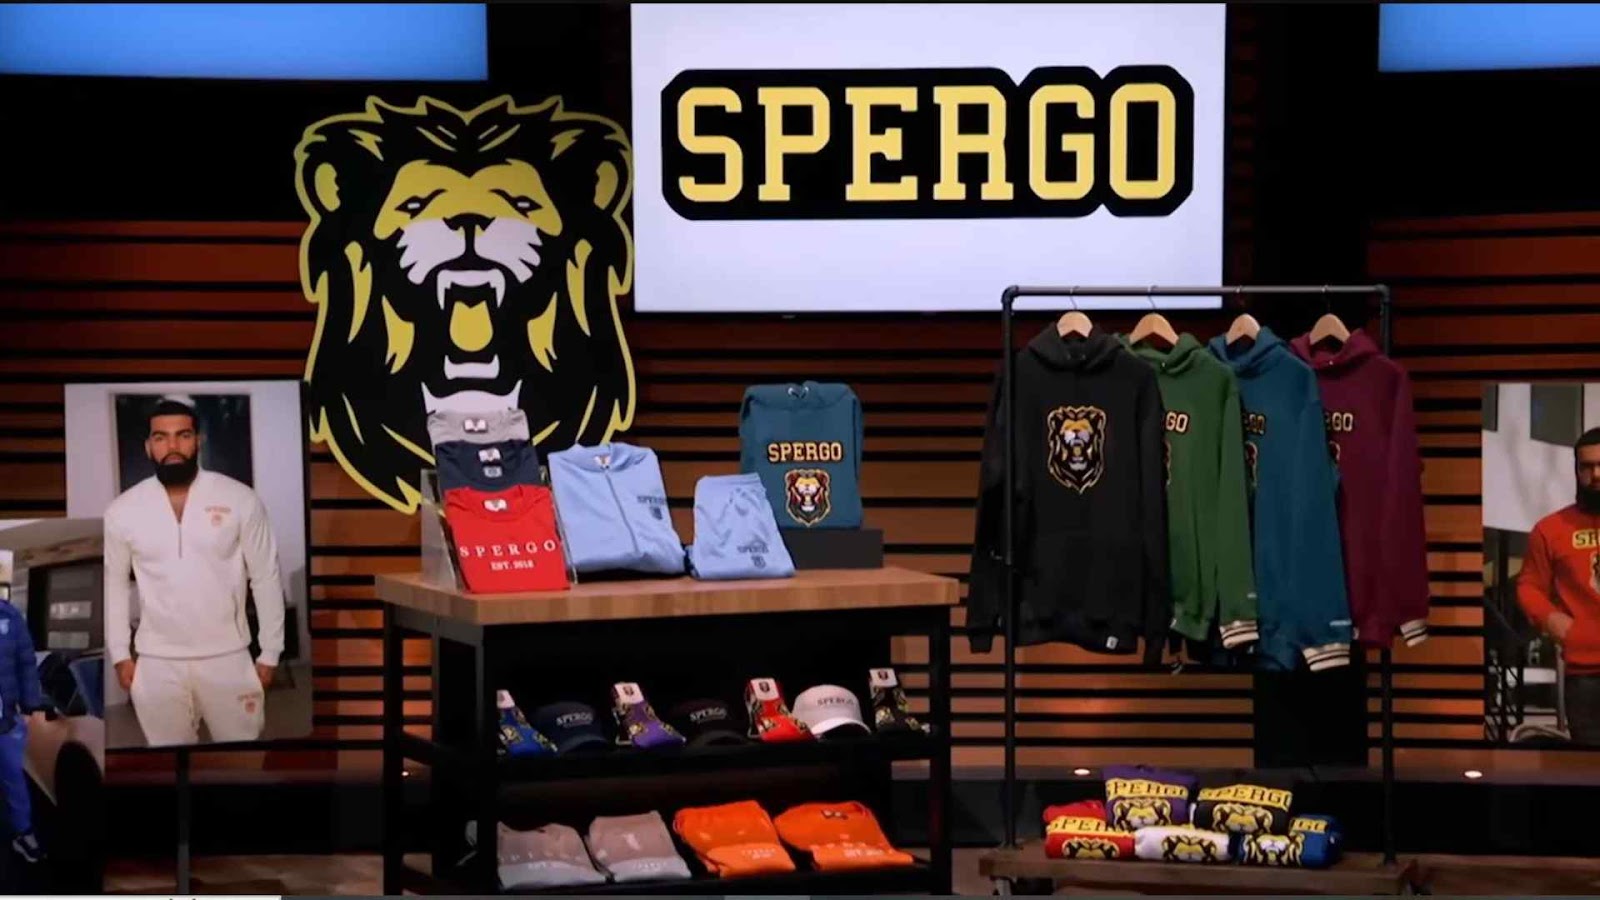 Spergo Clothing brand